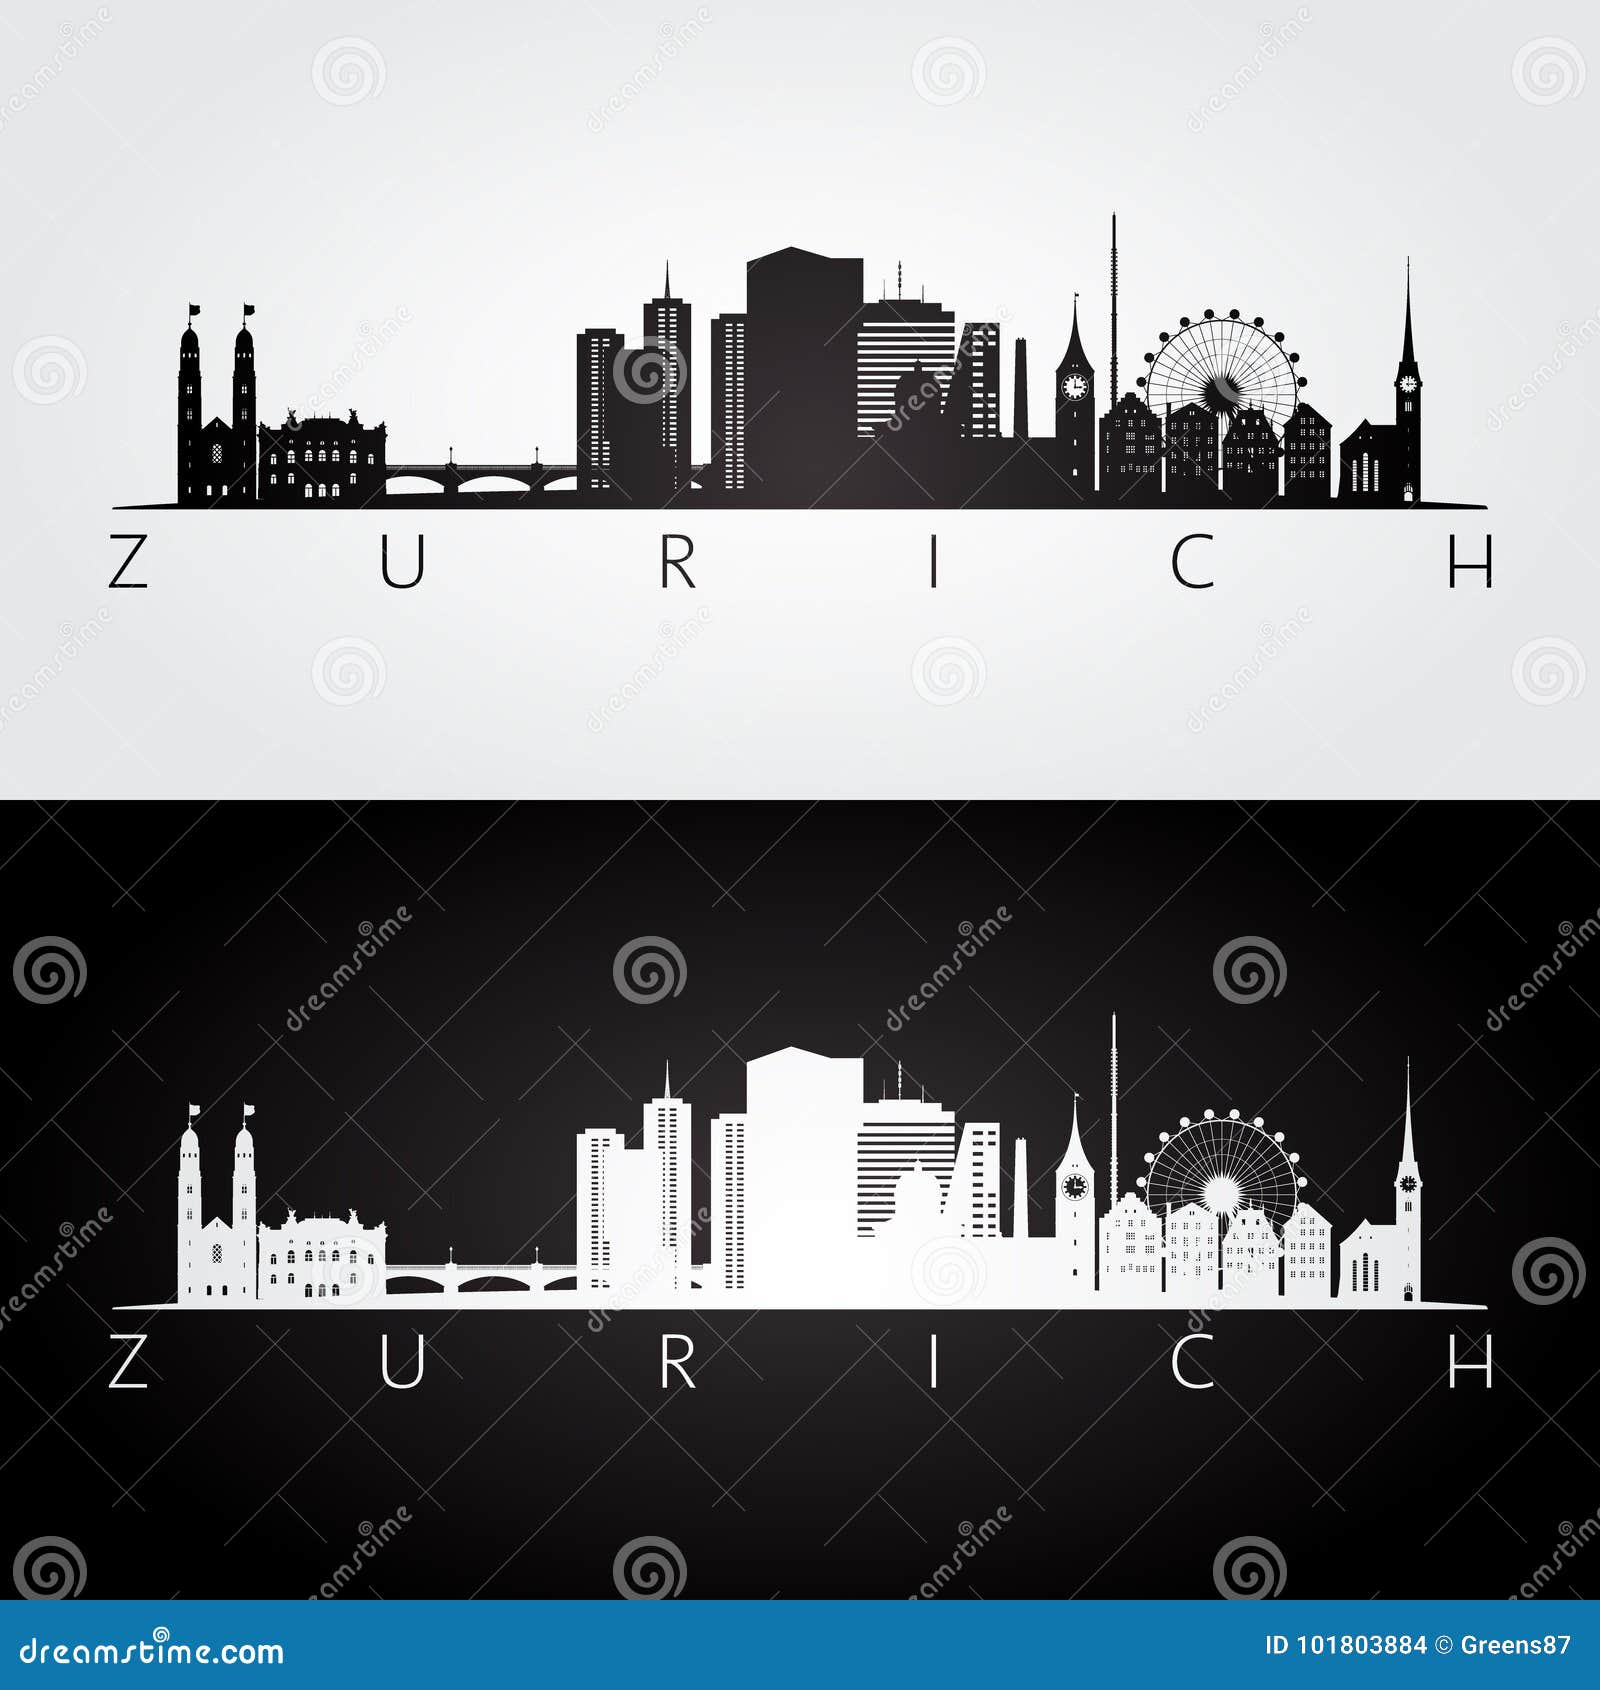 zurich skyline and landmarks silhouette